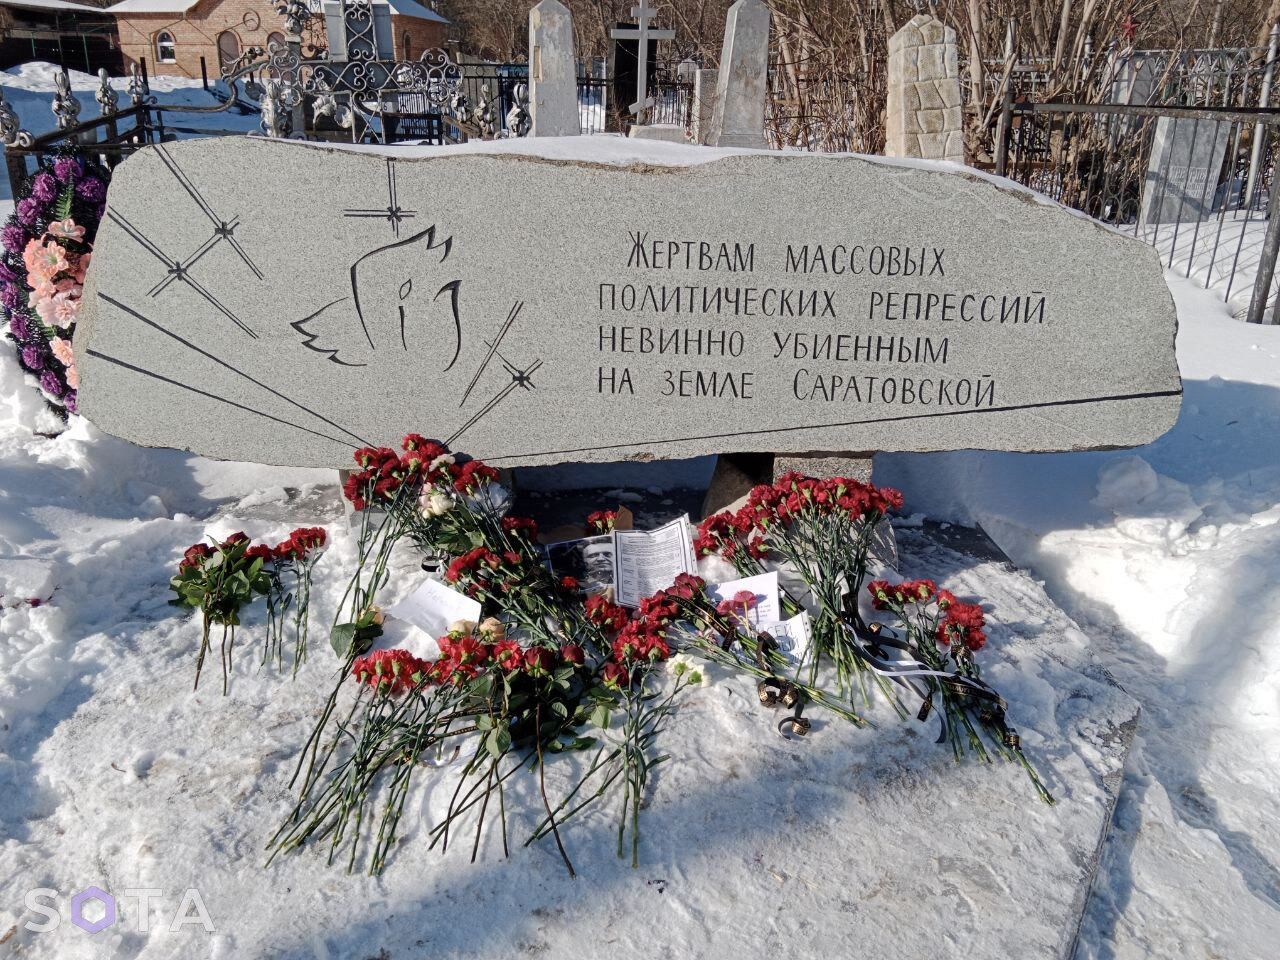 Соратники Навального подтвердили его смерть: в России начались задержания участников памятных акций. Фото и видео